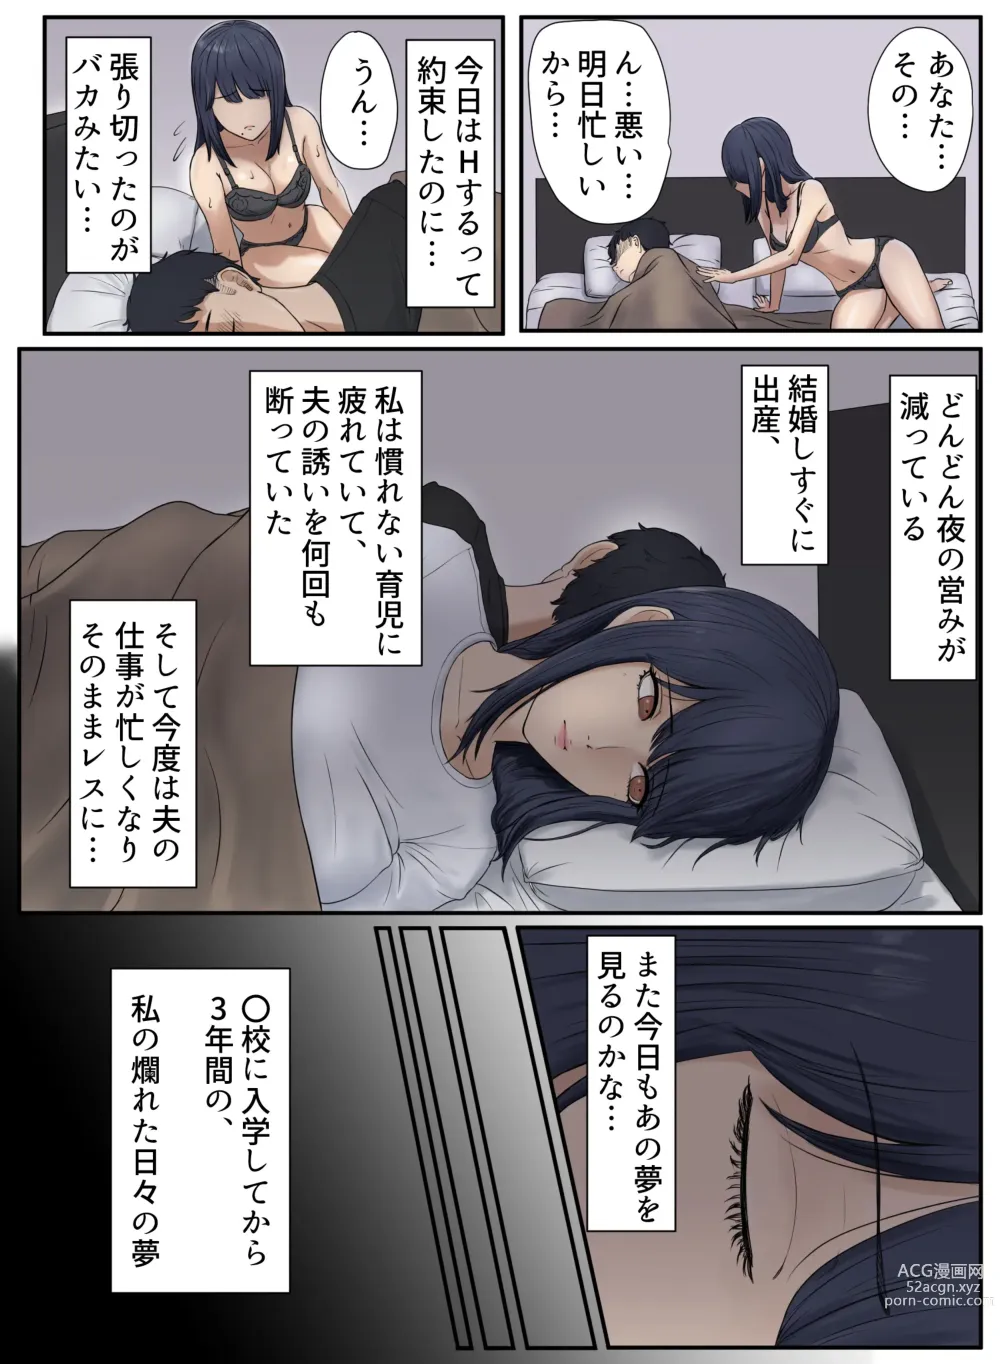 Page 4 of doujinshi Tonari no Ie no Warui SENPAI